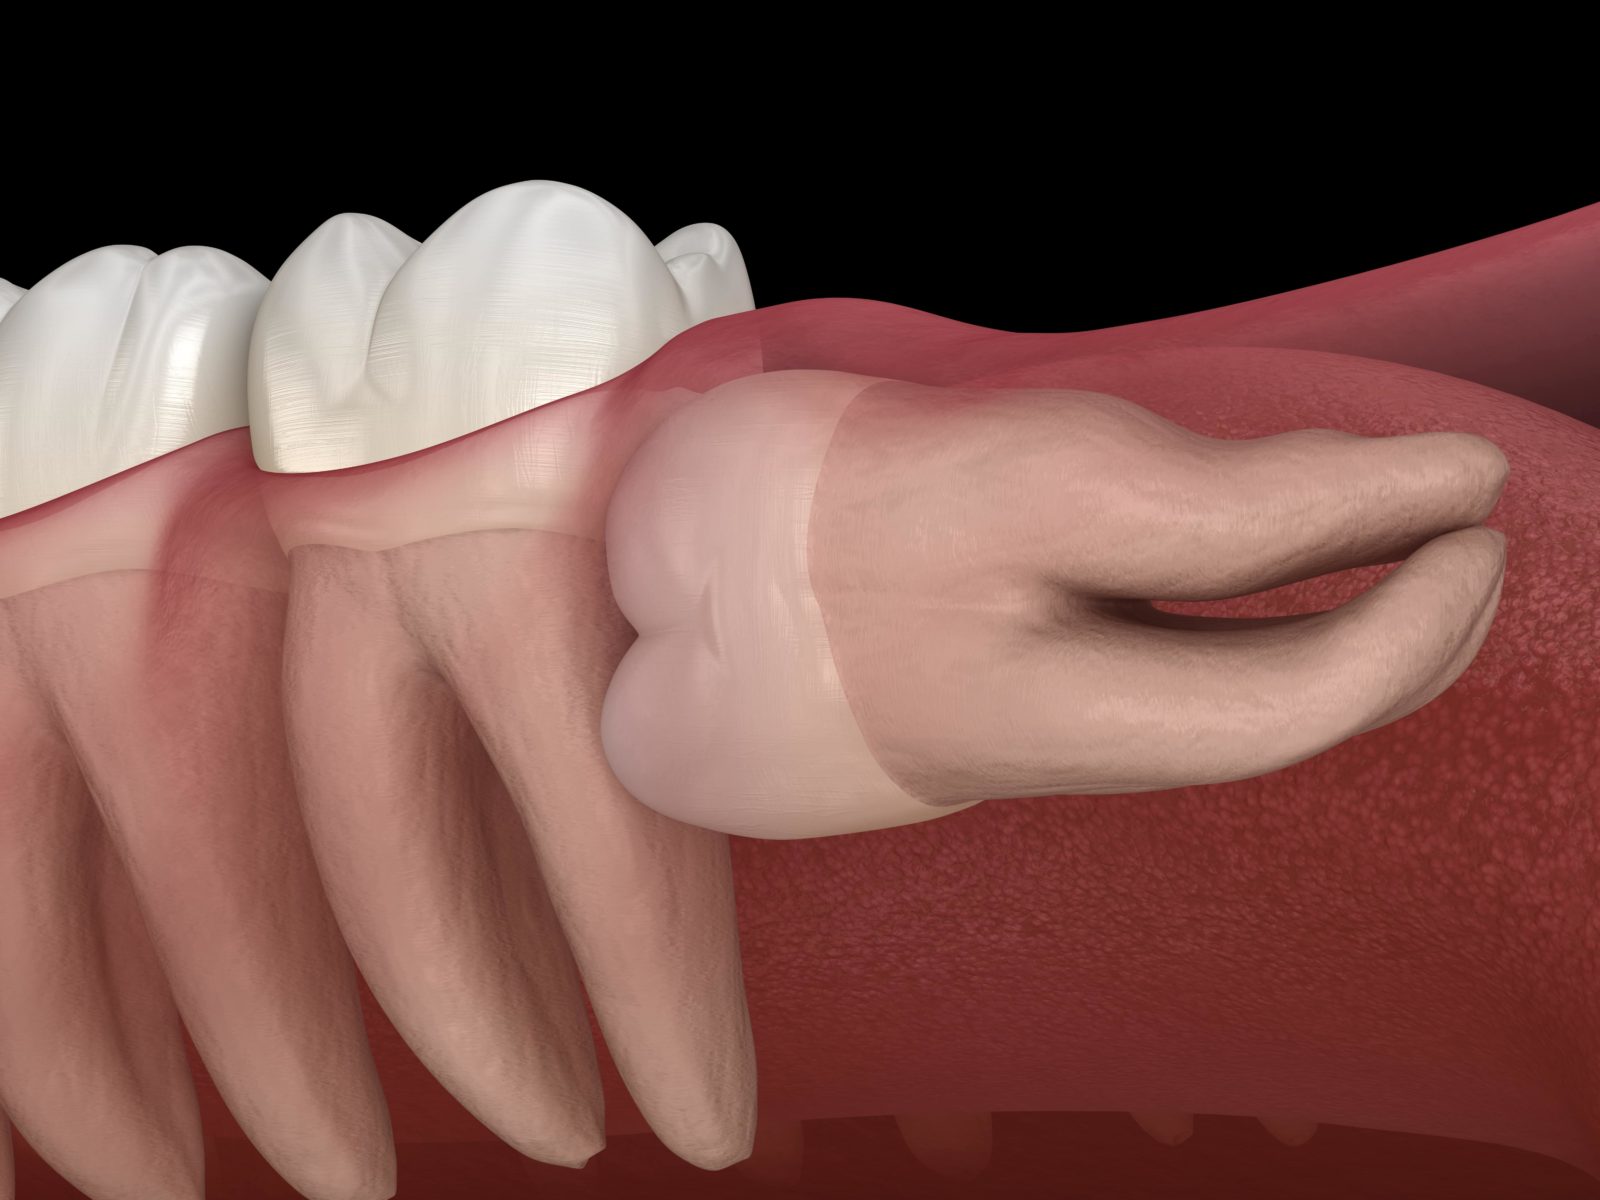 tooth growing sideways